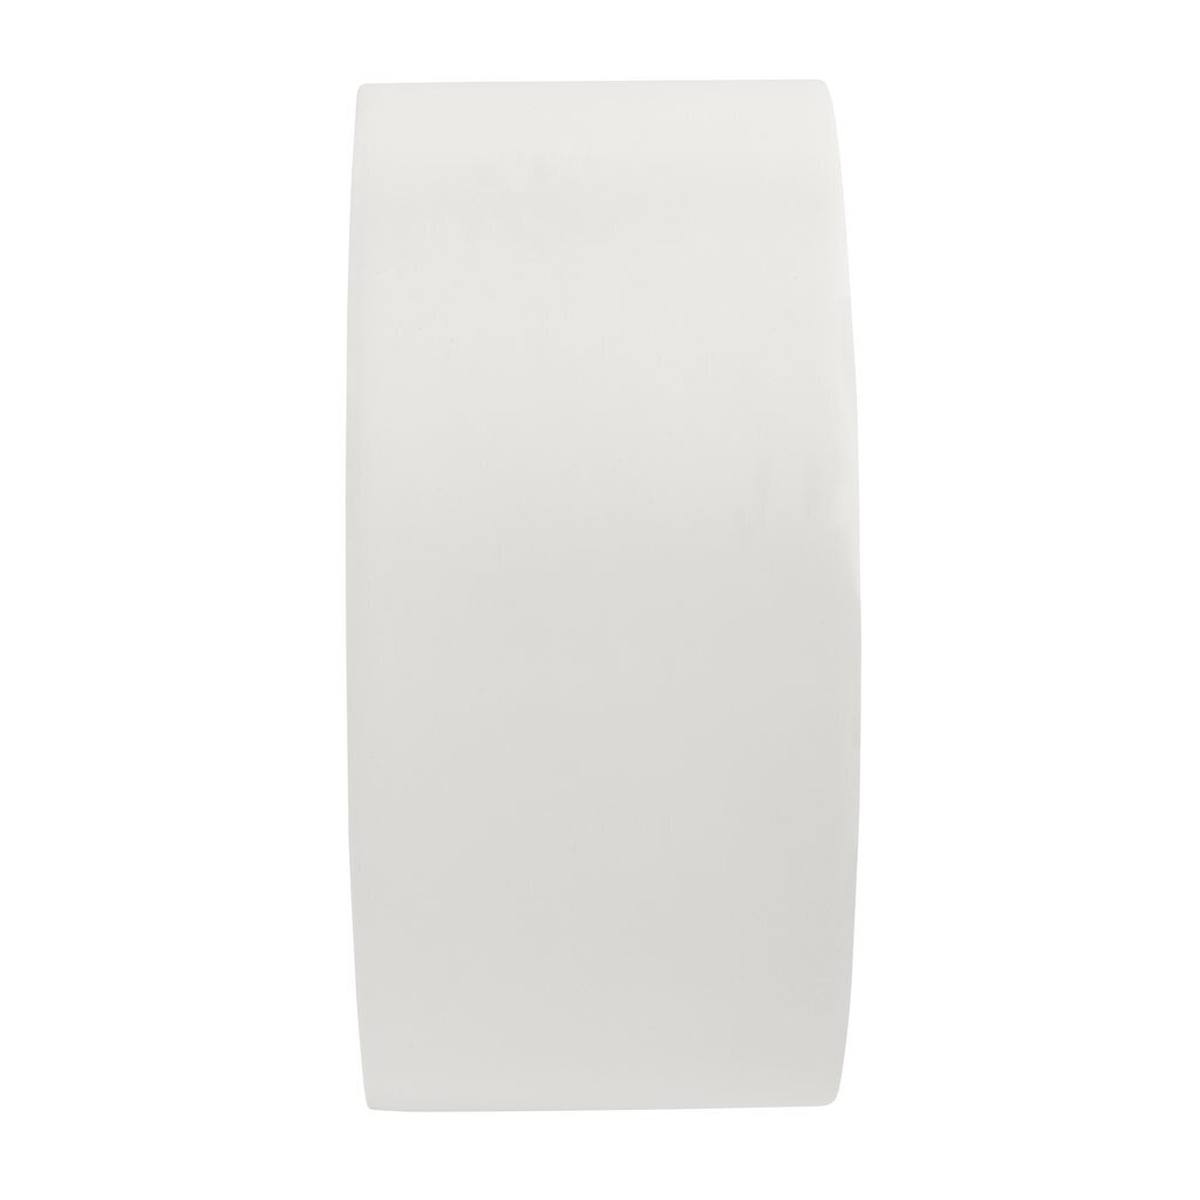 3M Allzweck-PVC-Klebeband 764, Weiß, 50 mm x 33 m, Einzeln praktisch verpackt